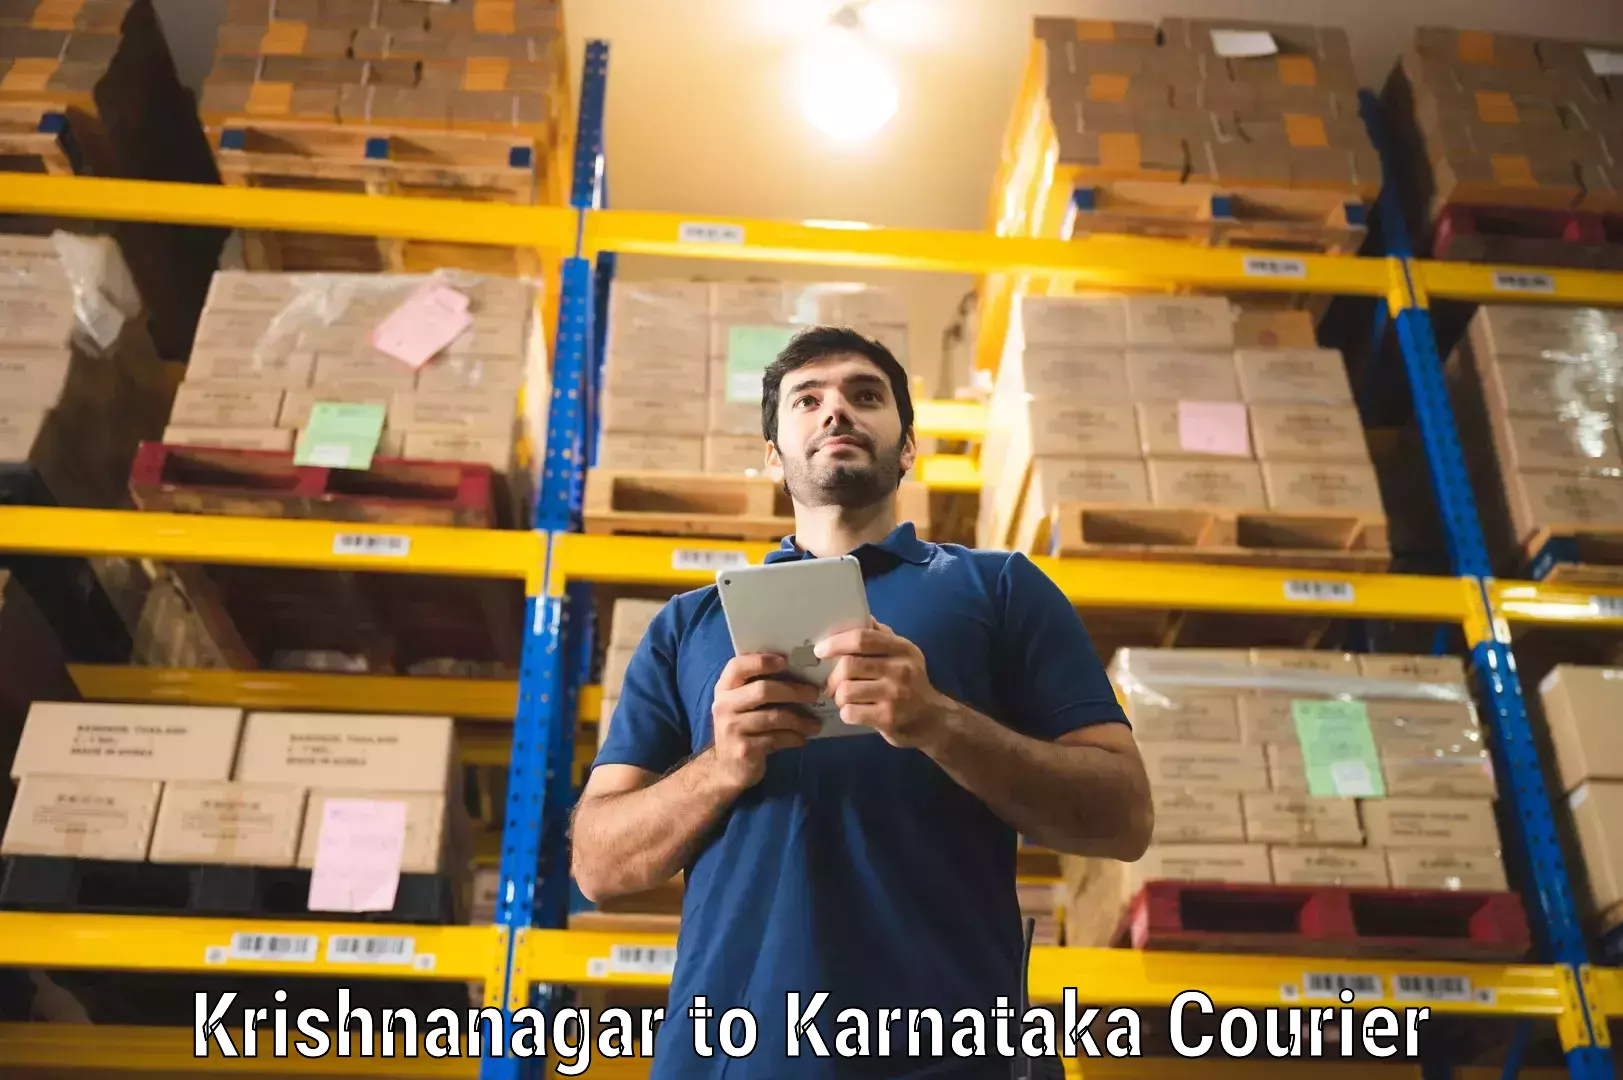 High-capacity parcel service Krishnanagar to Kalaburagi